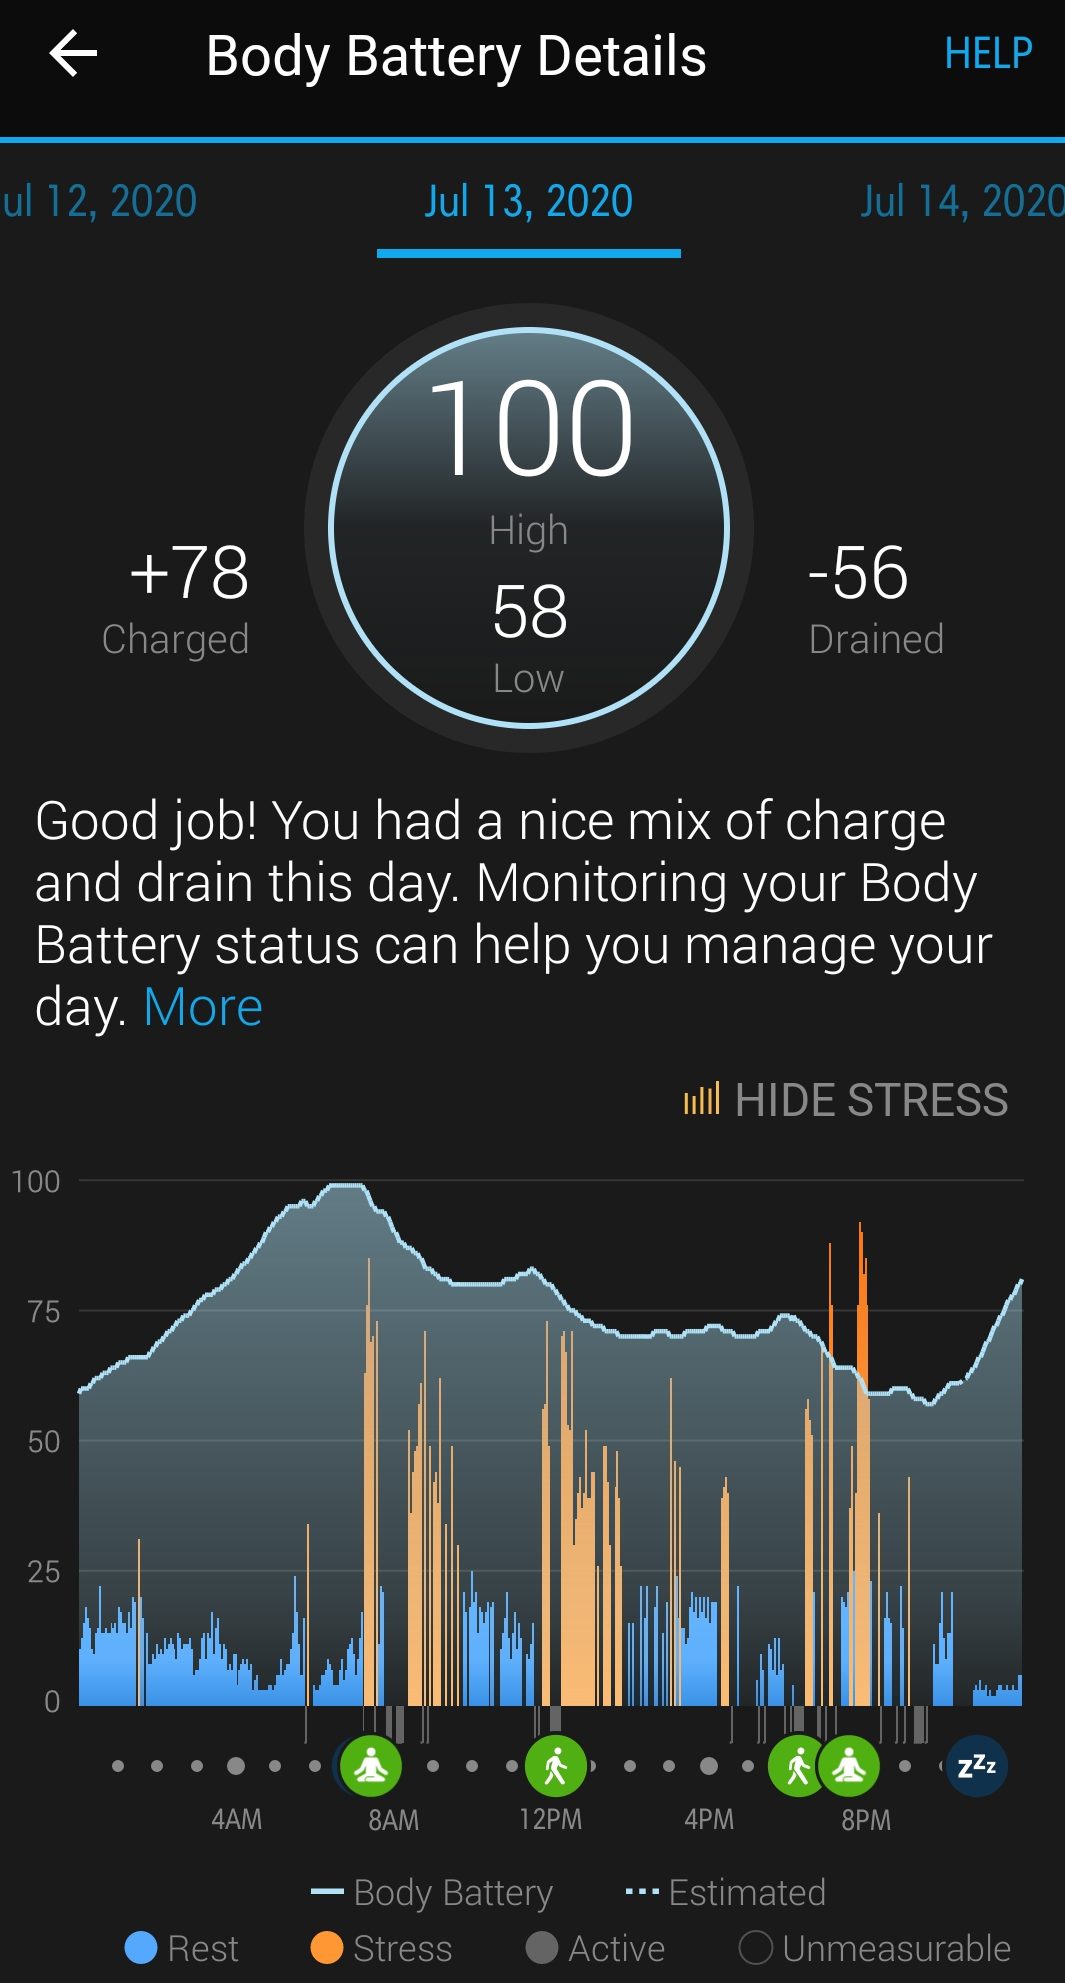 Body Battery + Stress